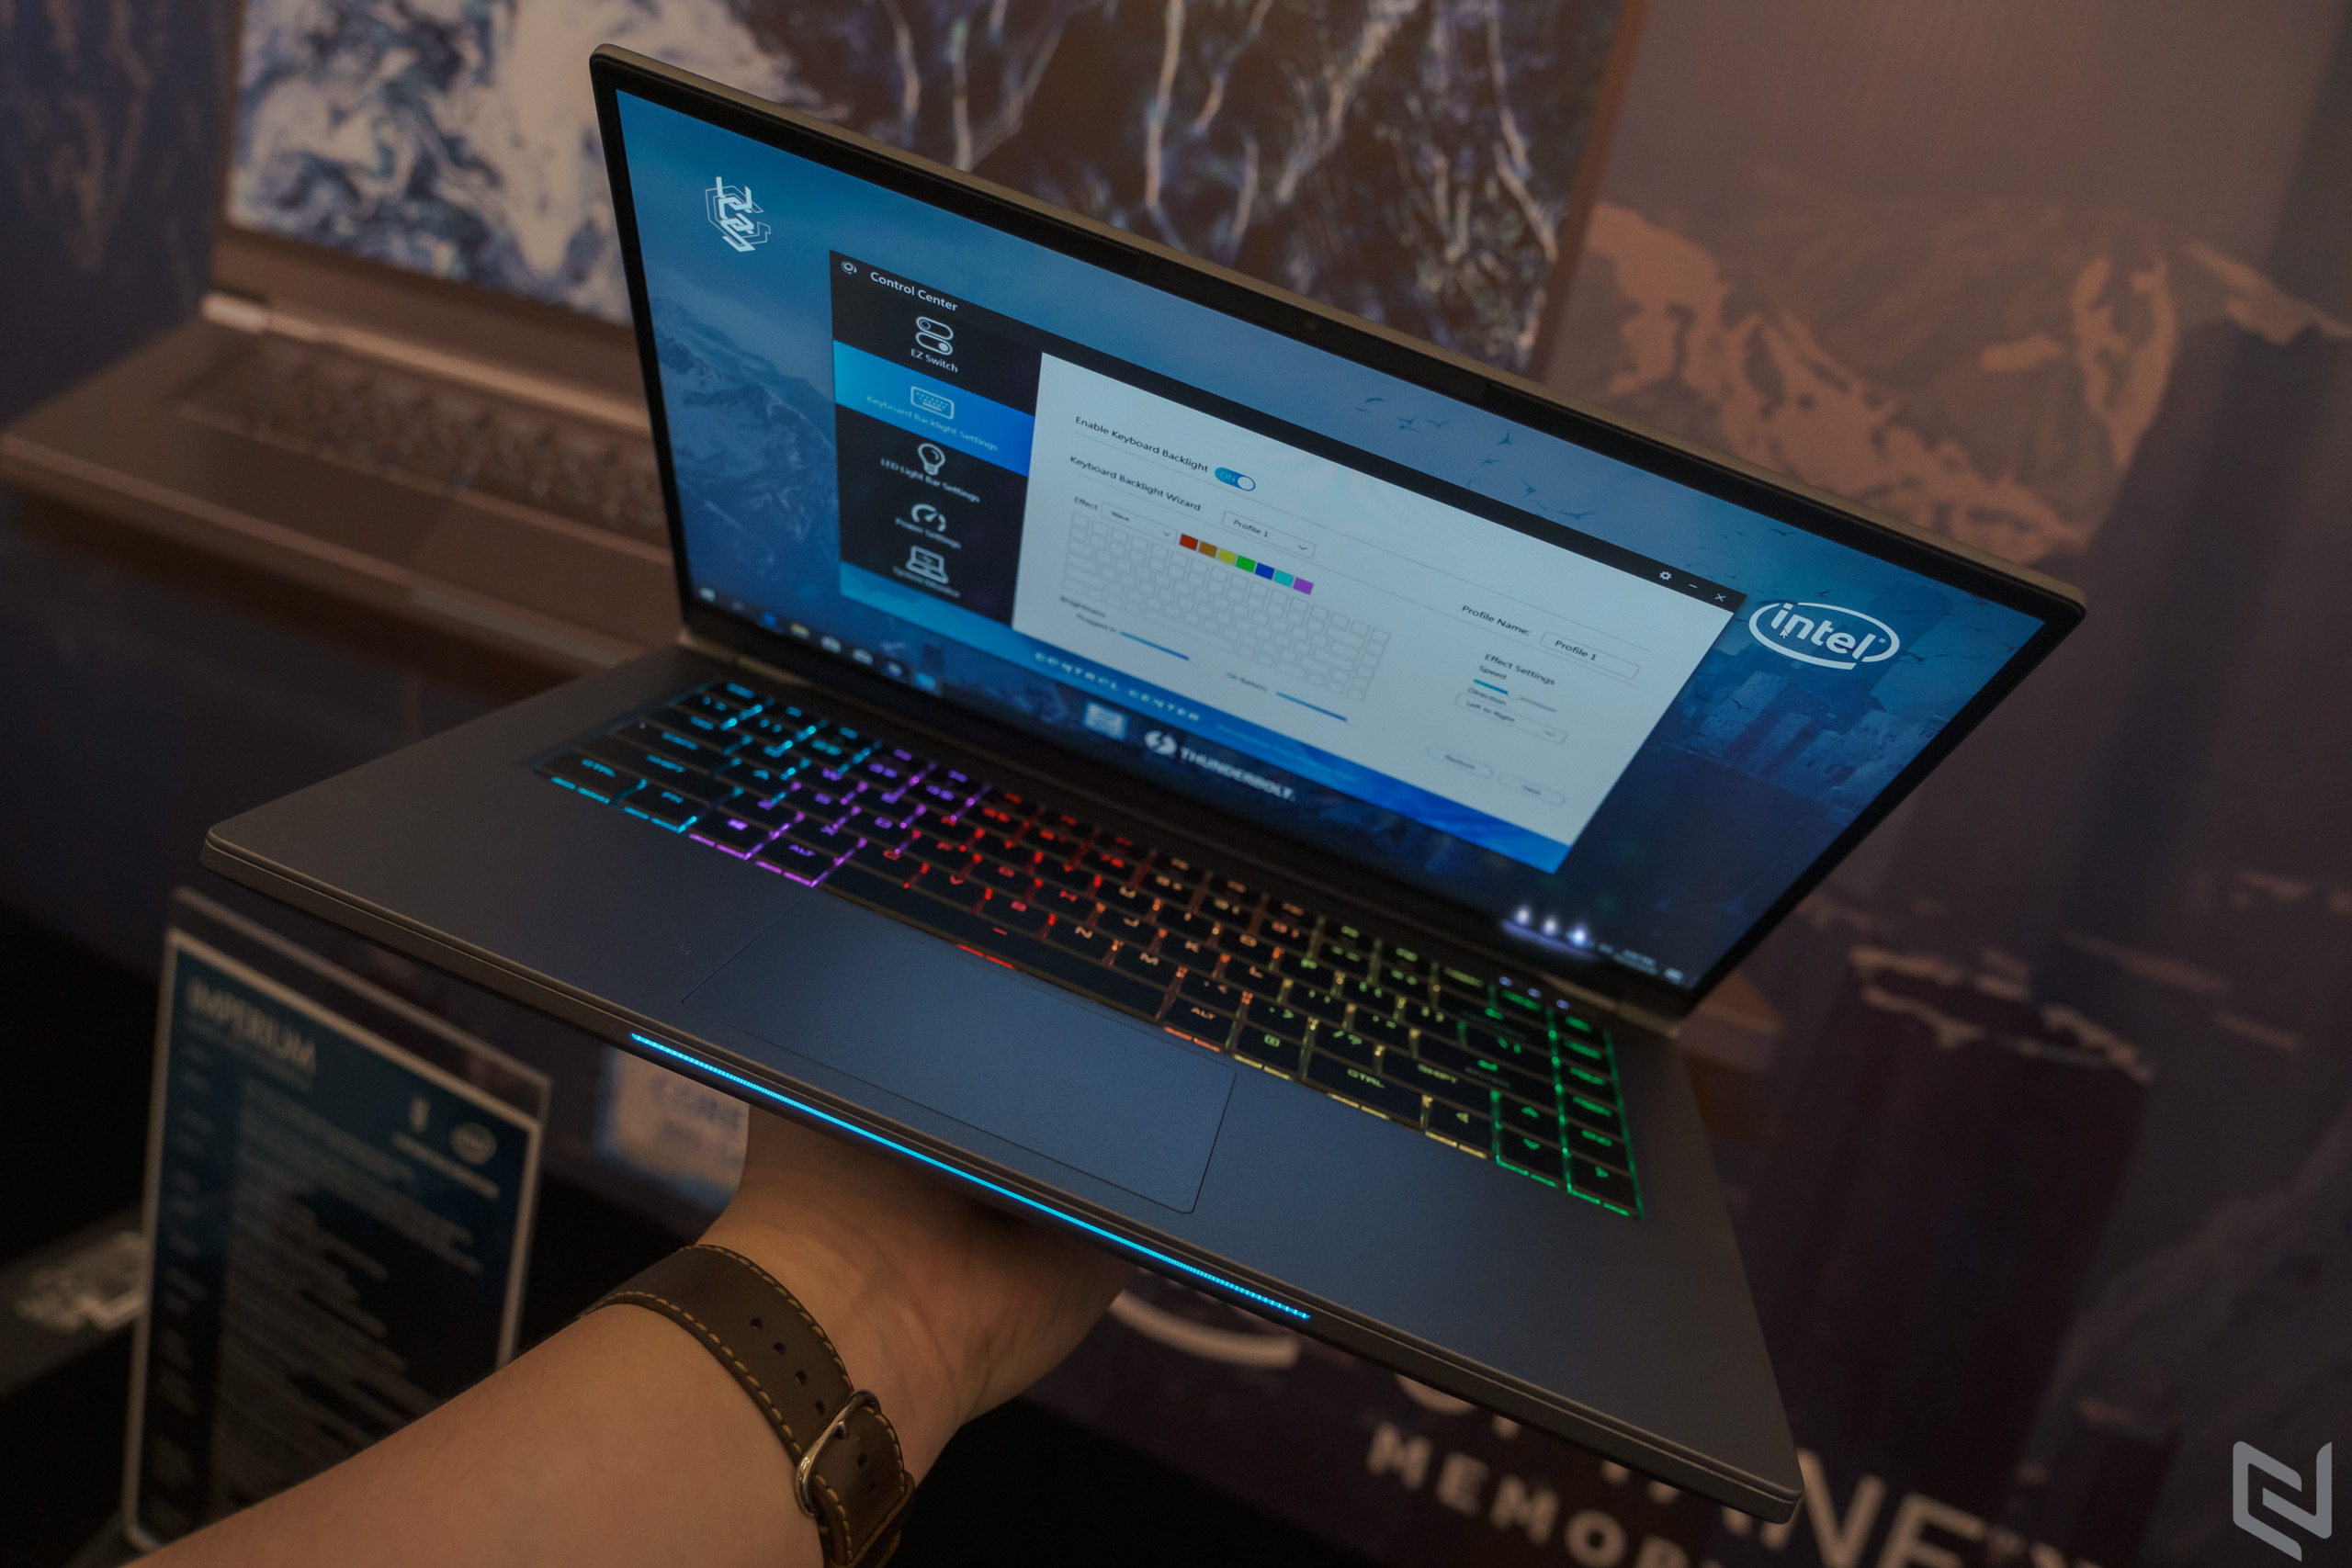 Intel kết hợp cùng VGS ra mắt laptop gaming cao cấp Imperium, bảo hành 1 đổi 1 bất kì lỗi, giá từ 37.4 triệu đồng